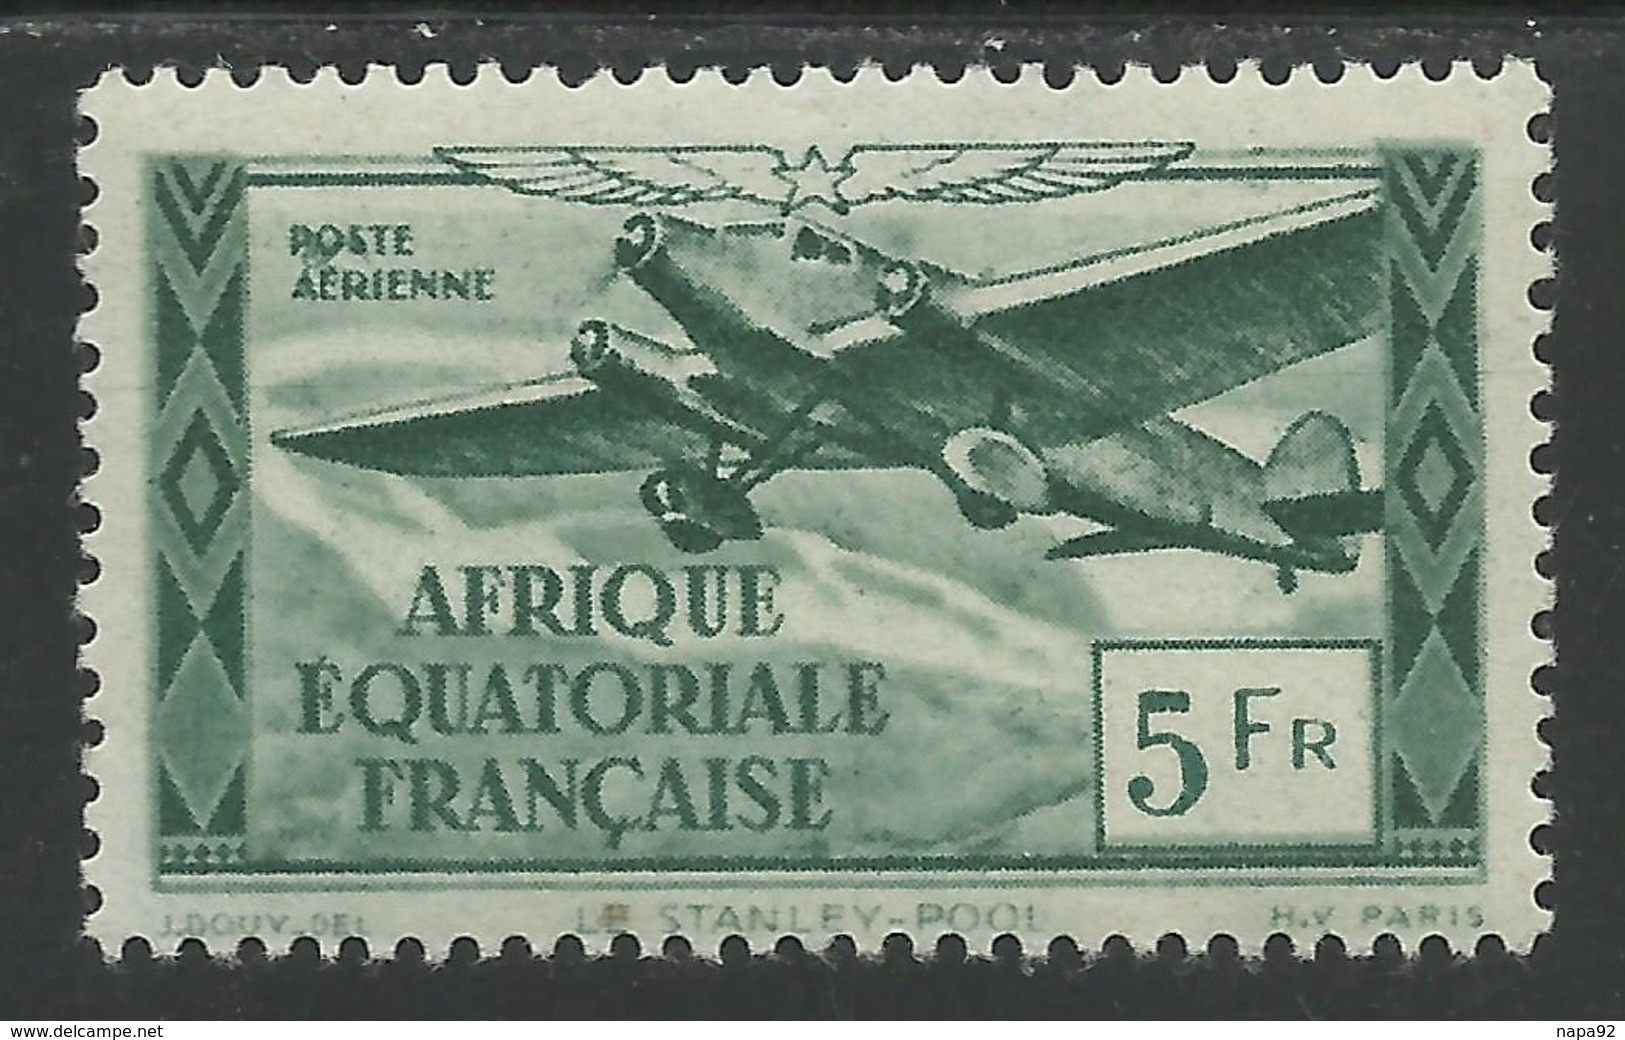 AFRIQUE EQUATORIALE FRANCAISE - AEF - A.E.F. - 1944 - YT PA 35** - Neufs